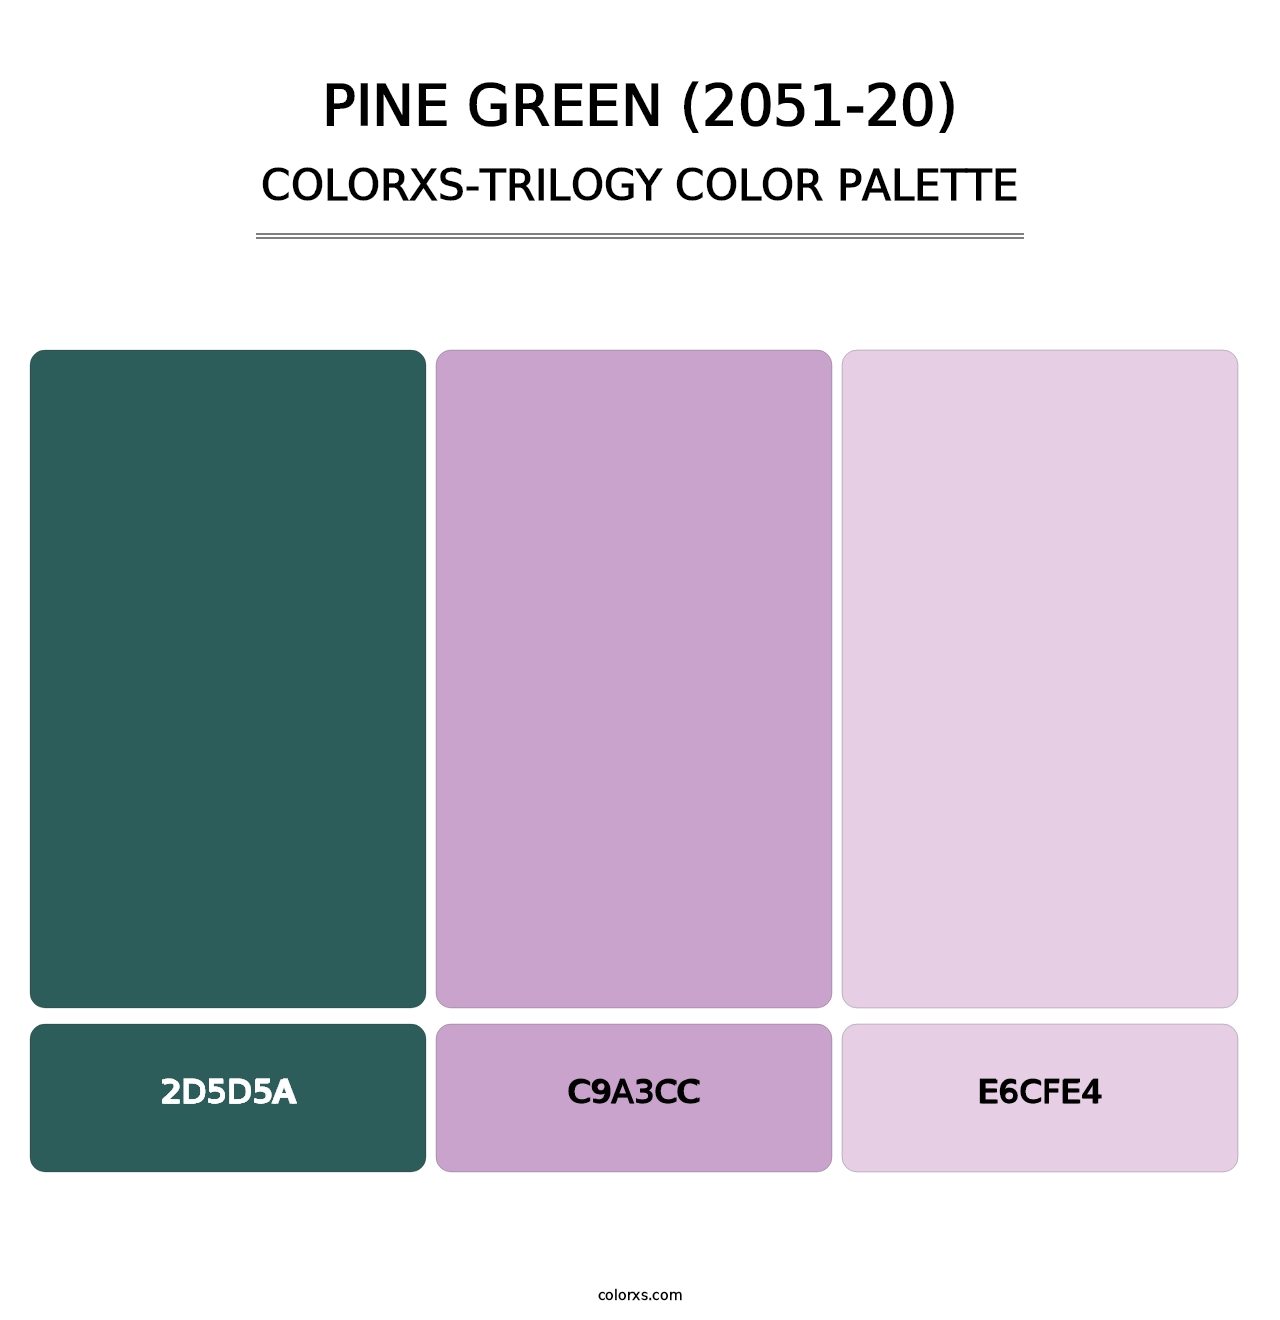 Pine Green (2051-20) - Colorxs Trilogy Palette